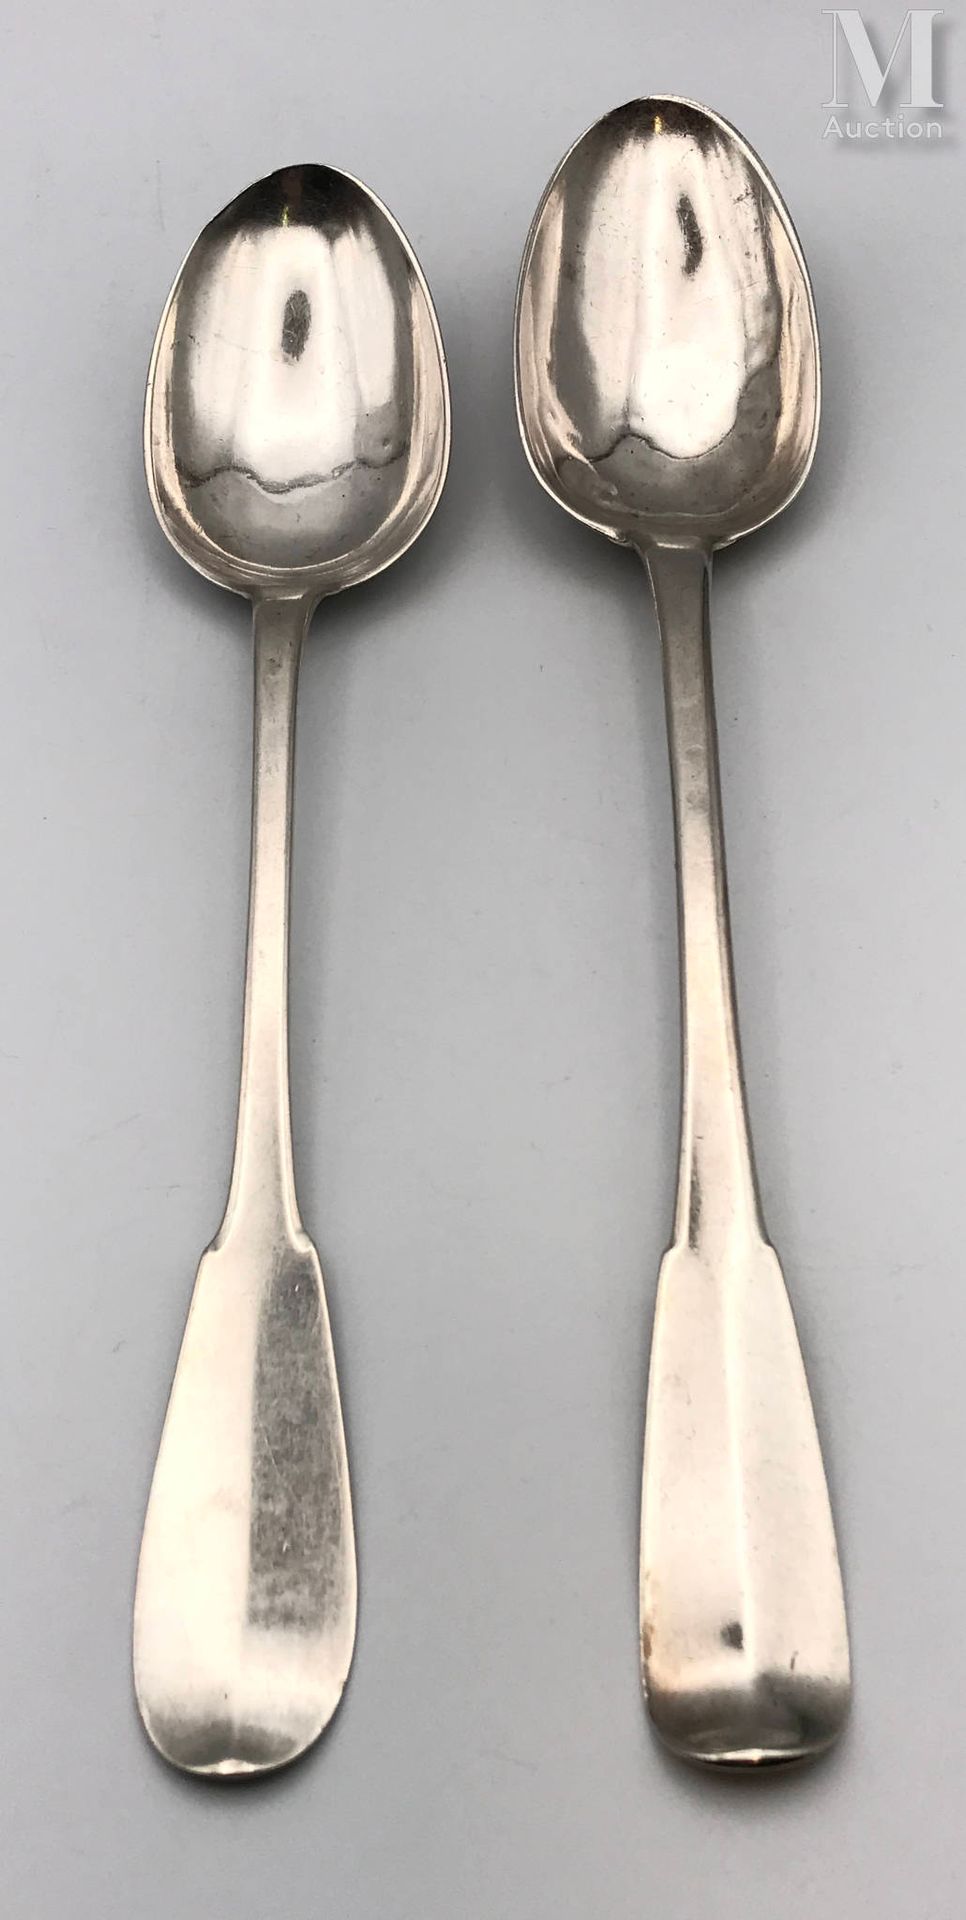 Deux cuillères à ragoût aus Silber, einfarbiges Modell.

XVIII. Jahrhundert

Ste&hellip;